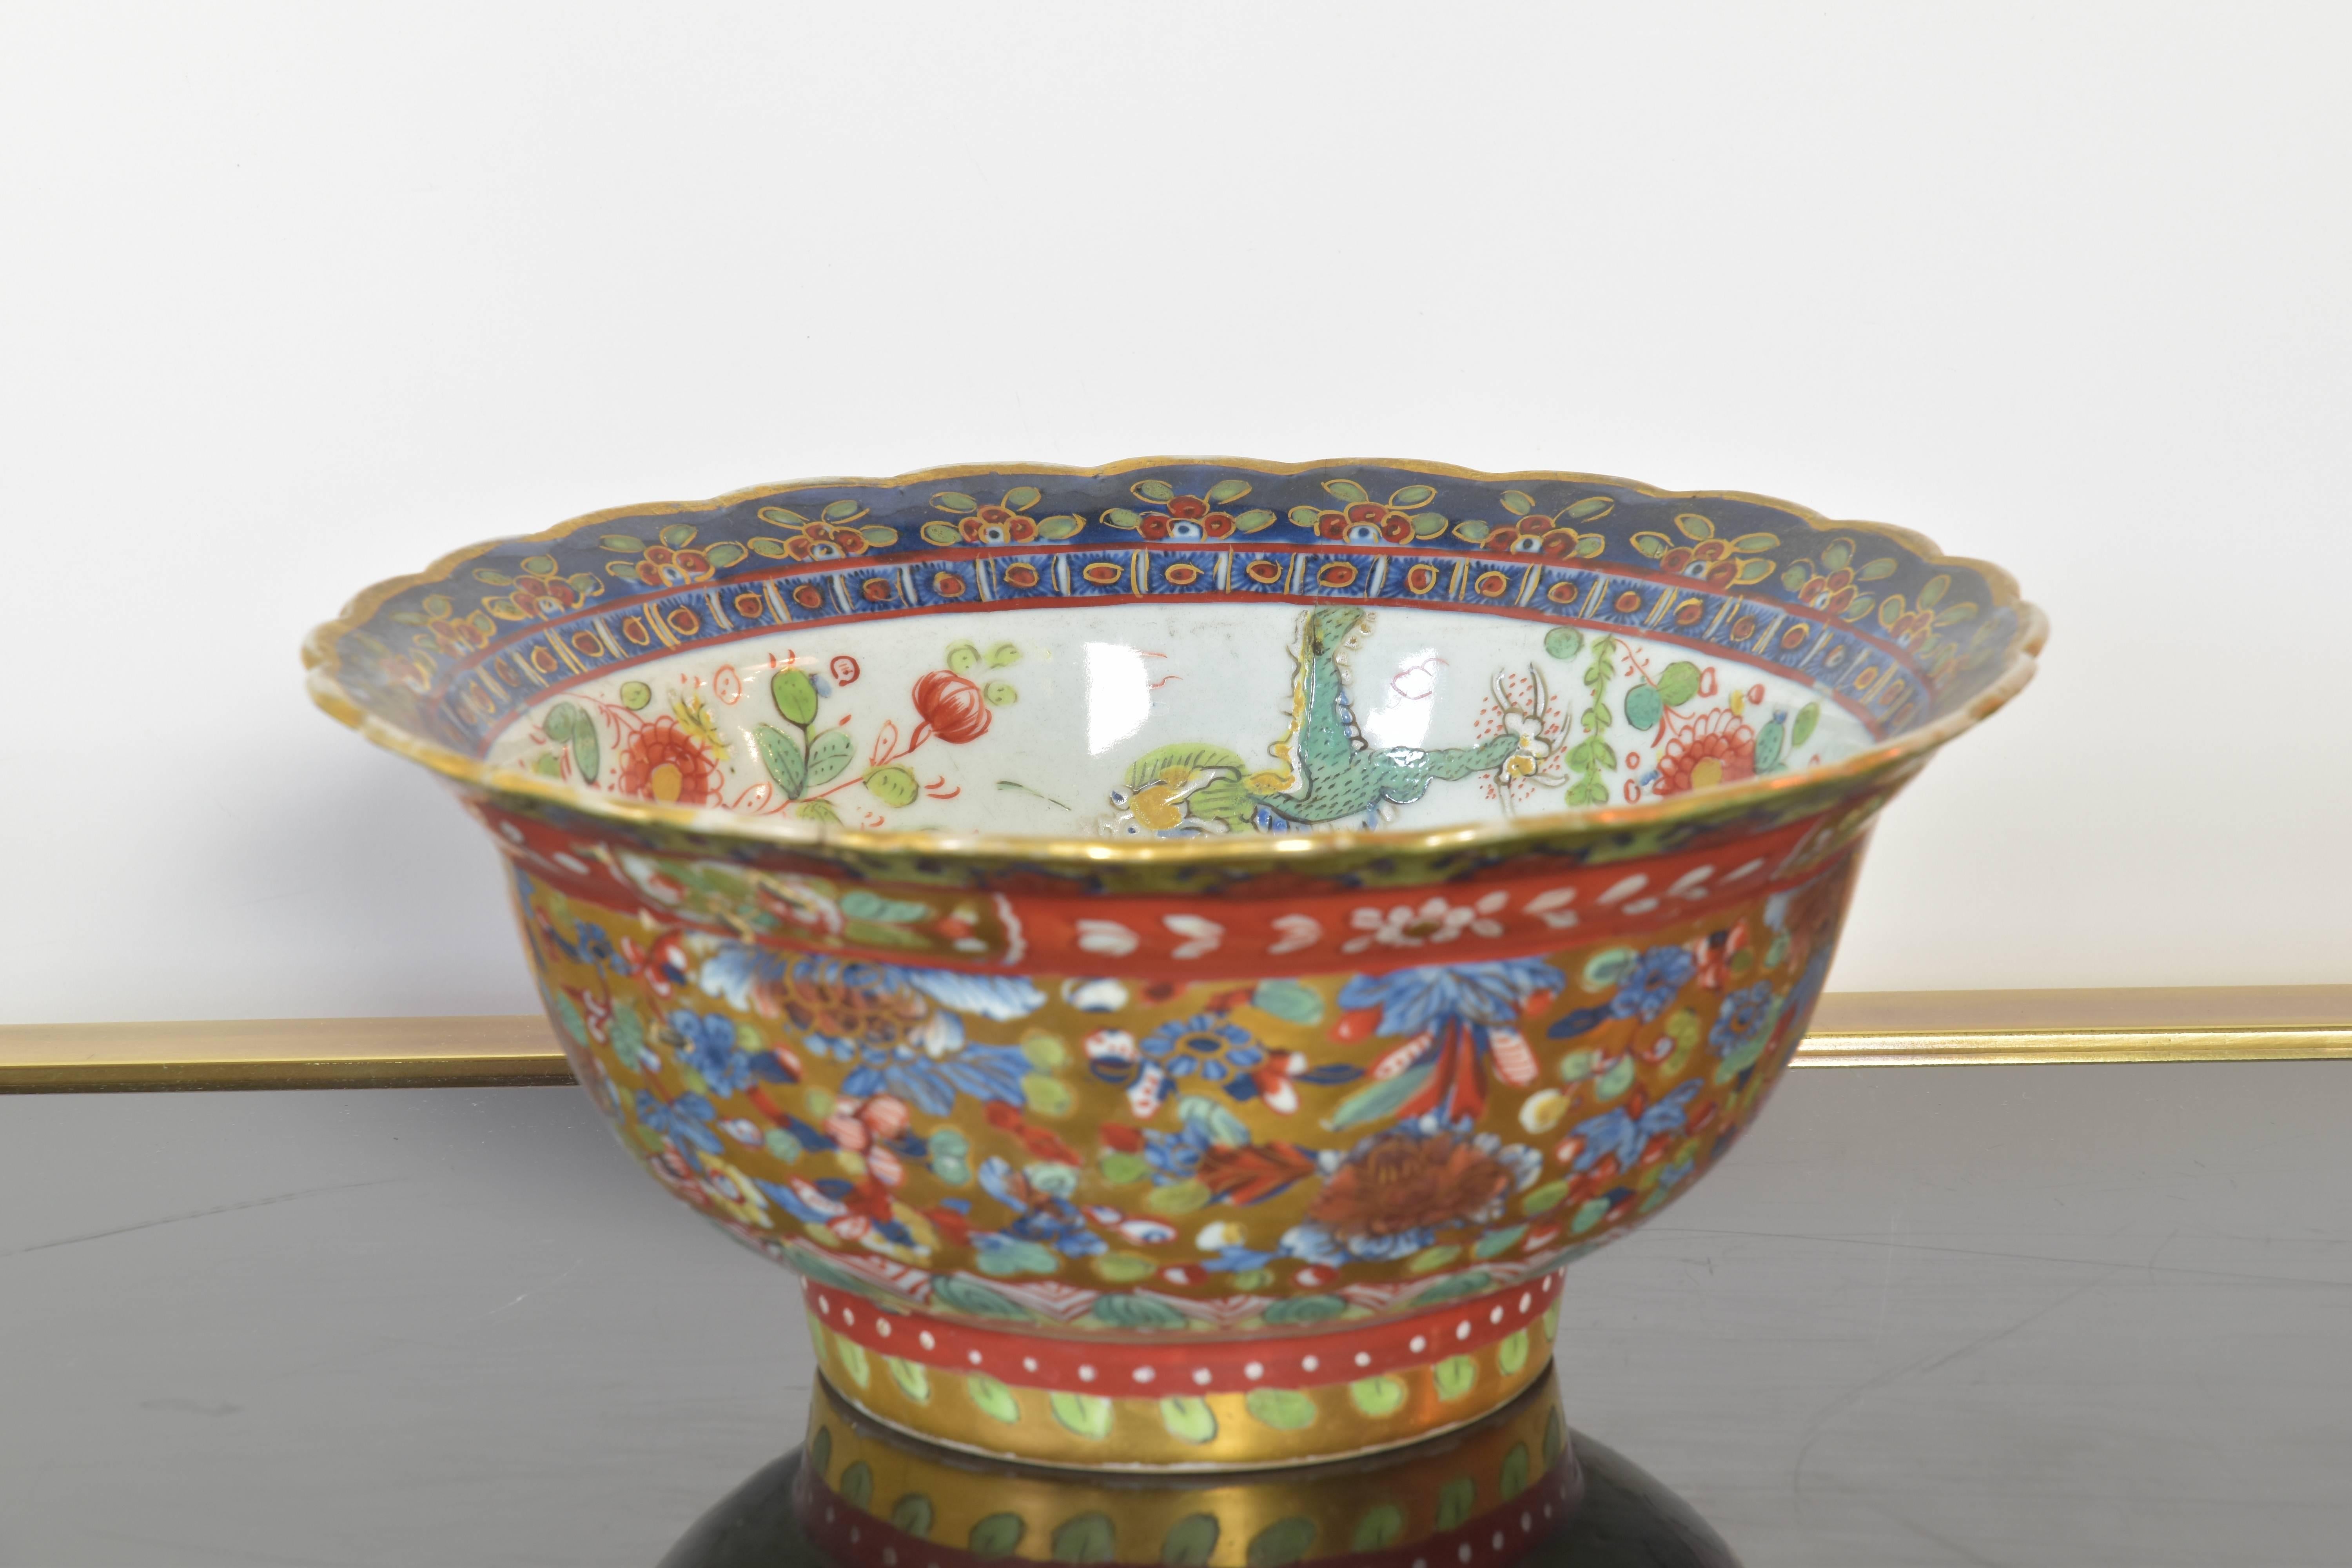 Eine erstaunliche chinesische Porzellanschale, handbedruckt mit Drachen und floralen Ornamenten, die auf einem schönen geschnitzten Holzsockel ruht. Das Stück hat eine Heftklammerreparatur, die um die Mitte des 18. Das genaue Alter des Stücks ist